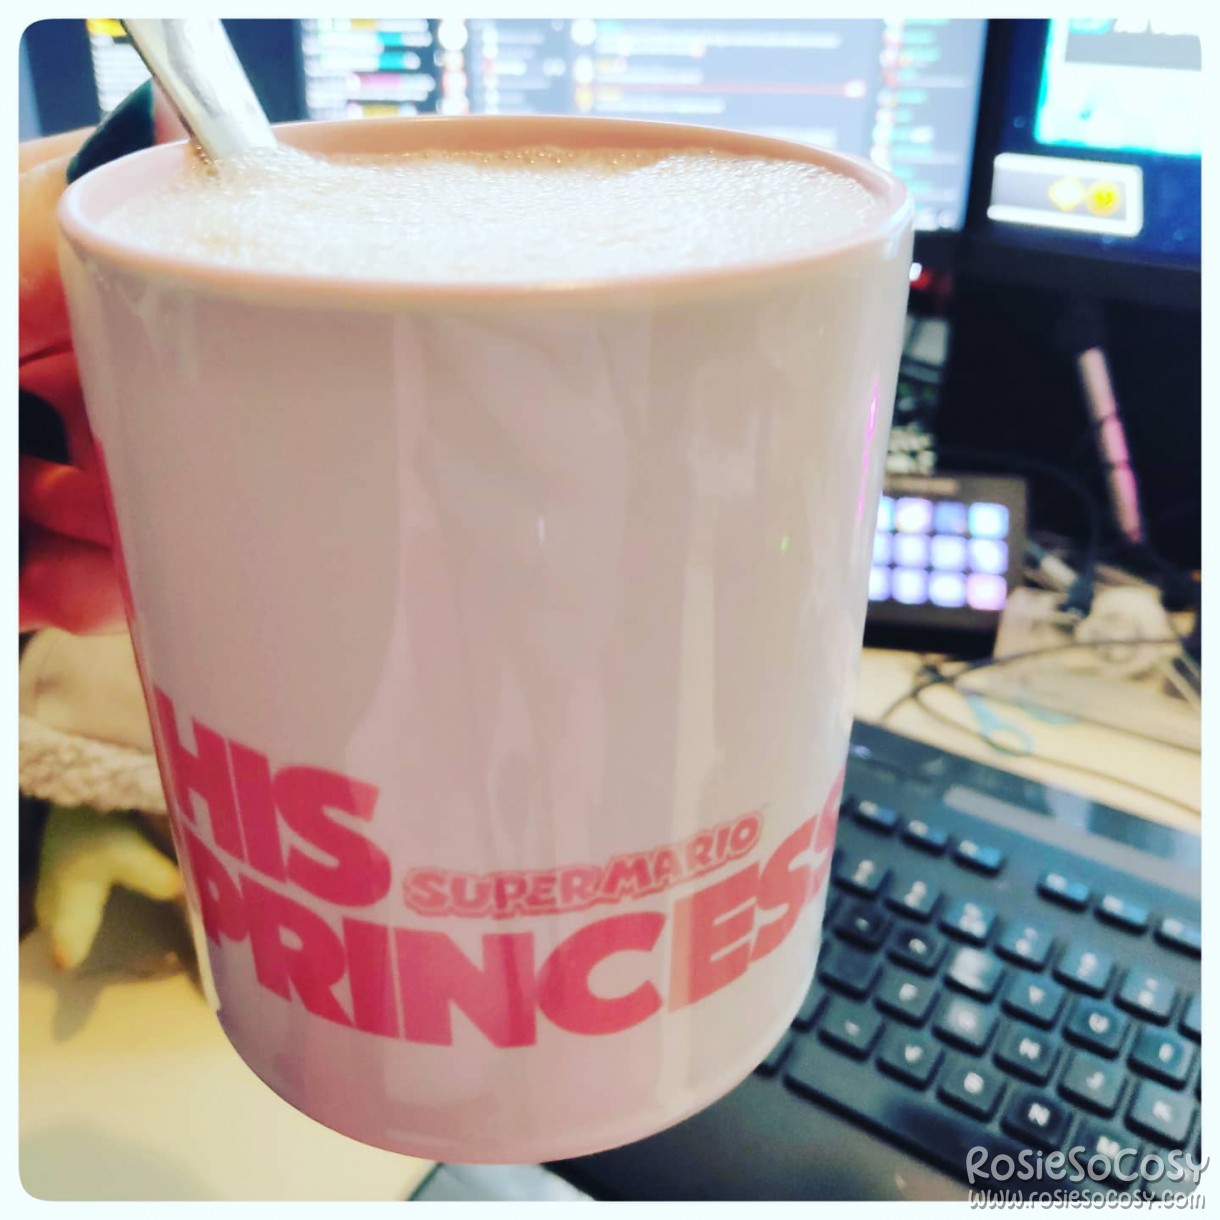 His Princess - Princess Peach mug mok